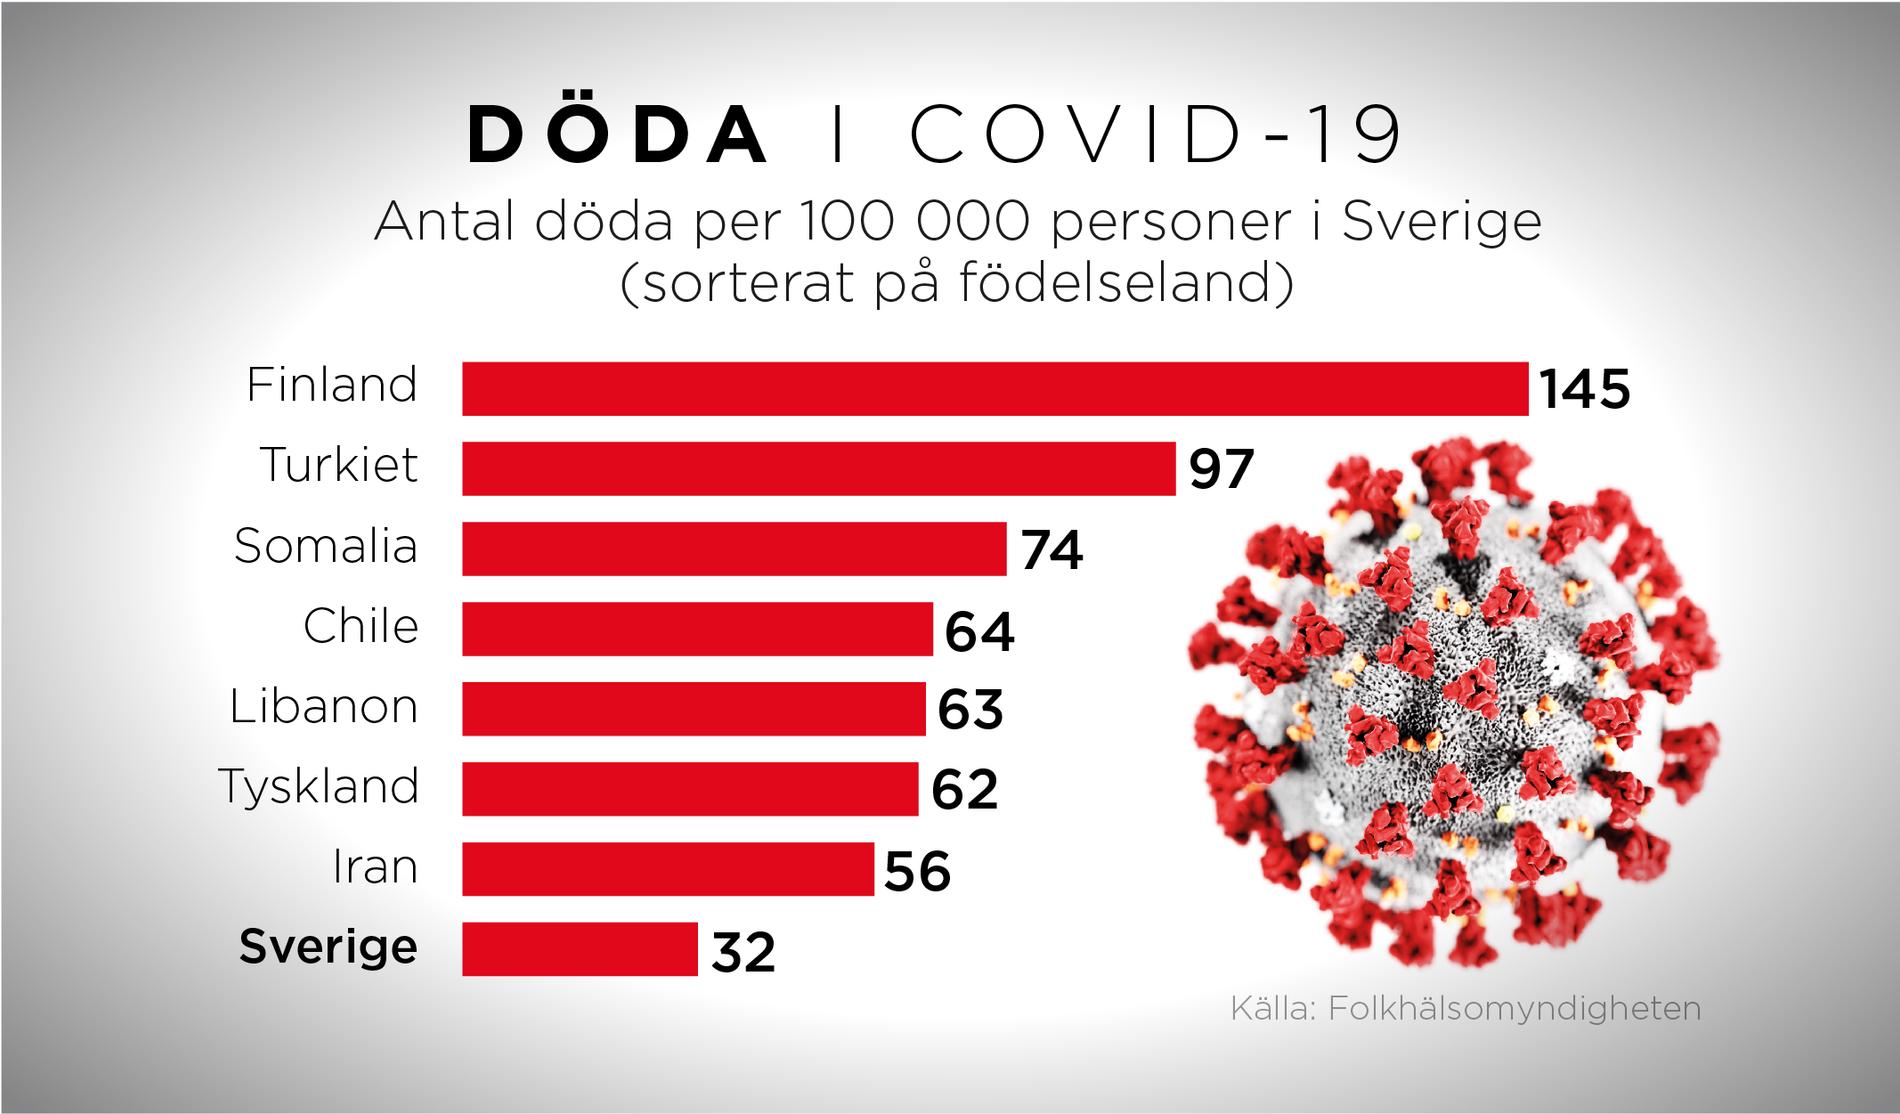 Bland invandrargrupper i Sverige är dödligheten vid bekräftad covid-19 högst för personer födda i Finland, 145 per 100 000 invånare.